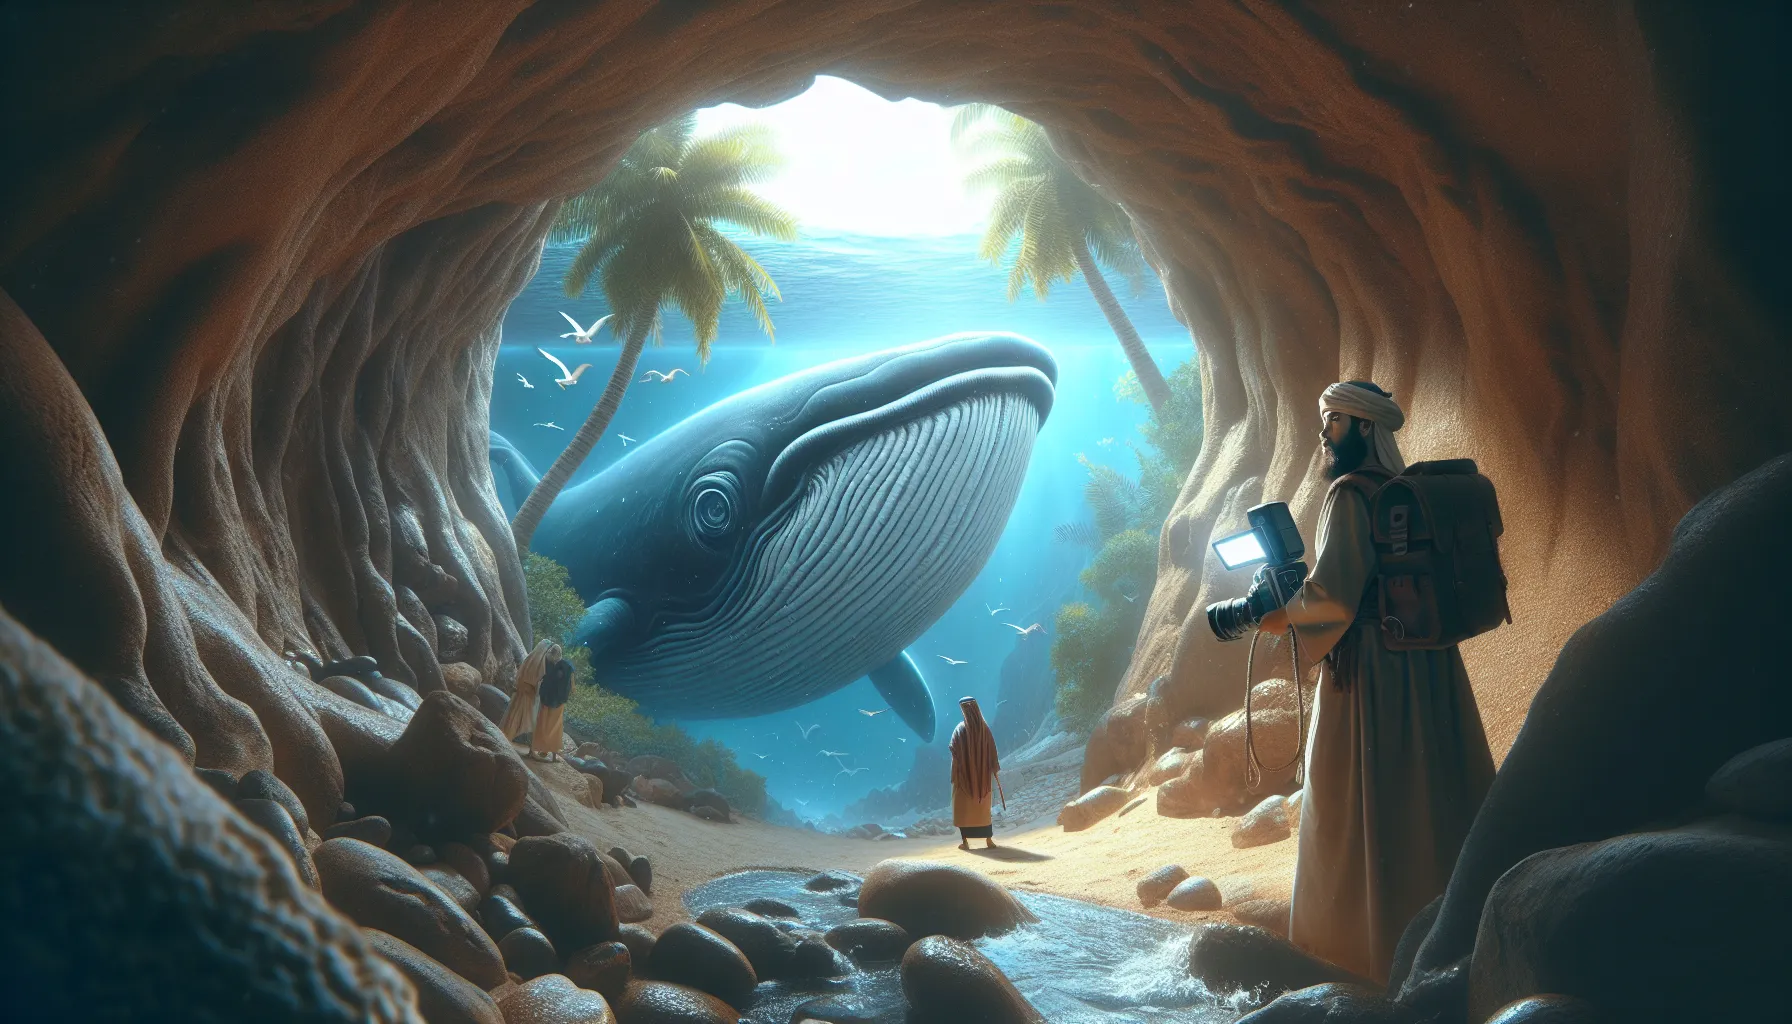 Descubre en esta imagen la representación de Jonás dentro del vientre de la ballena